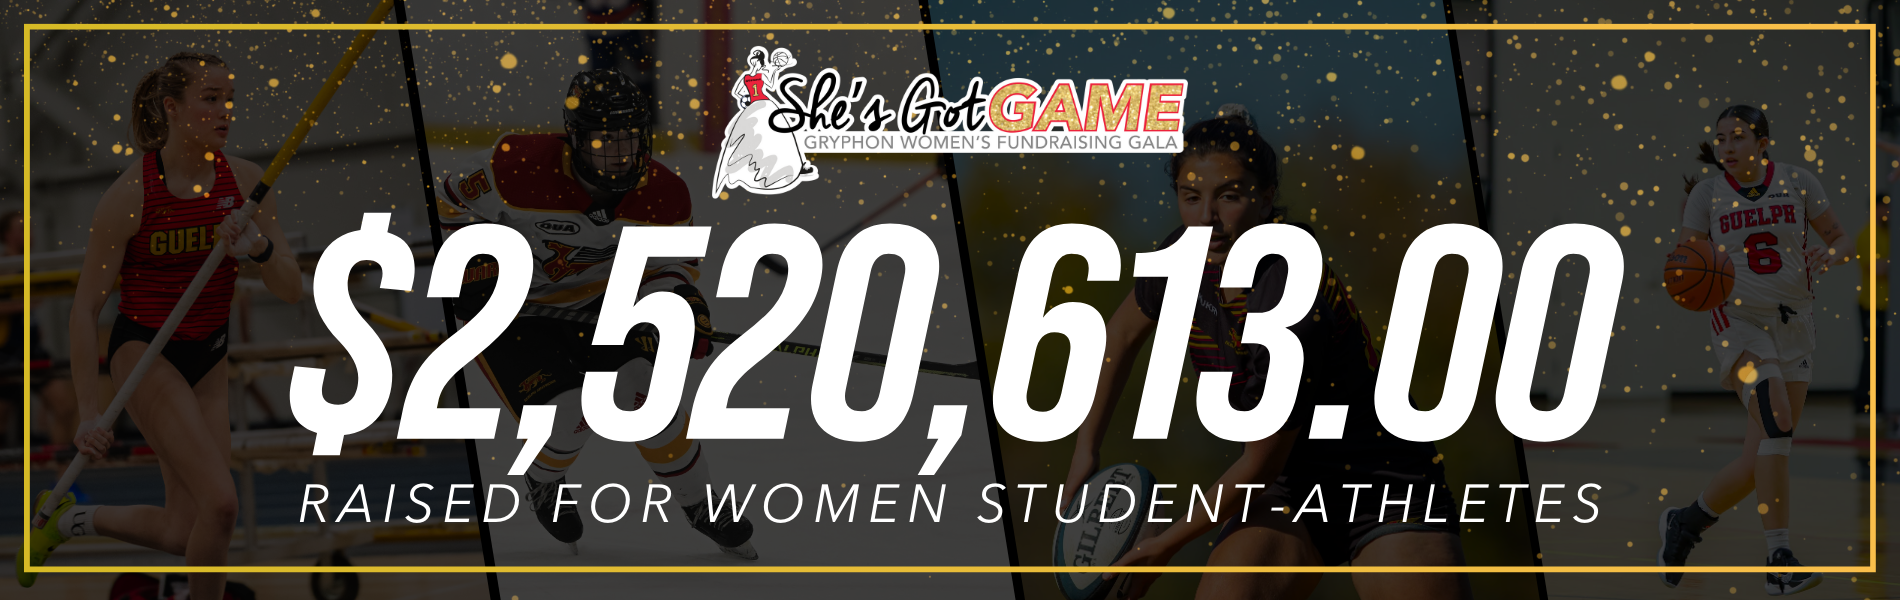 $2,520,613.00 raised for women student athletes. She's got game logo.